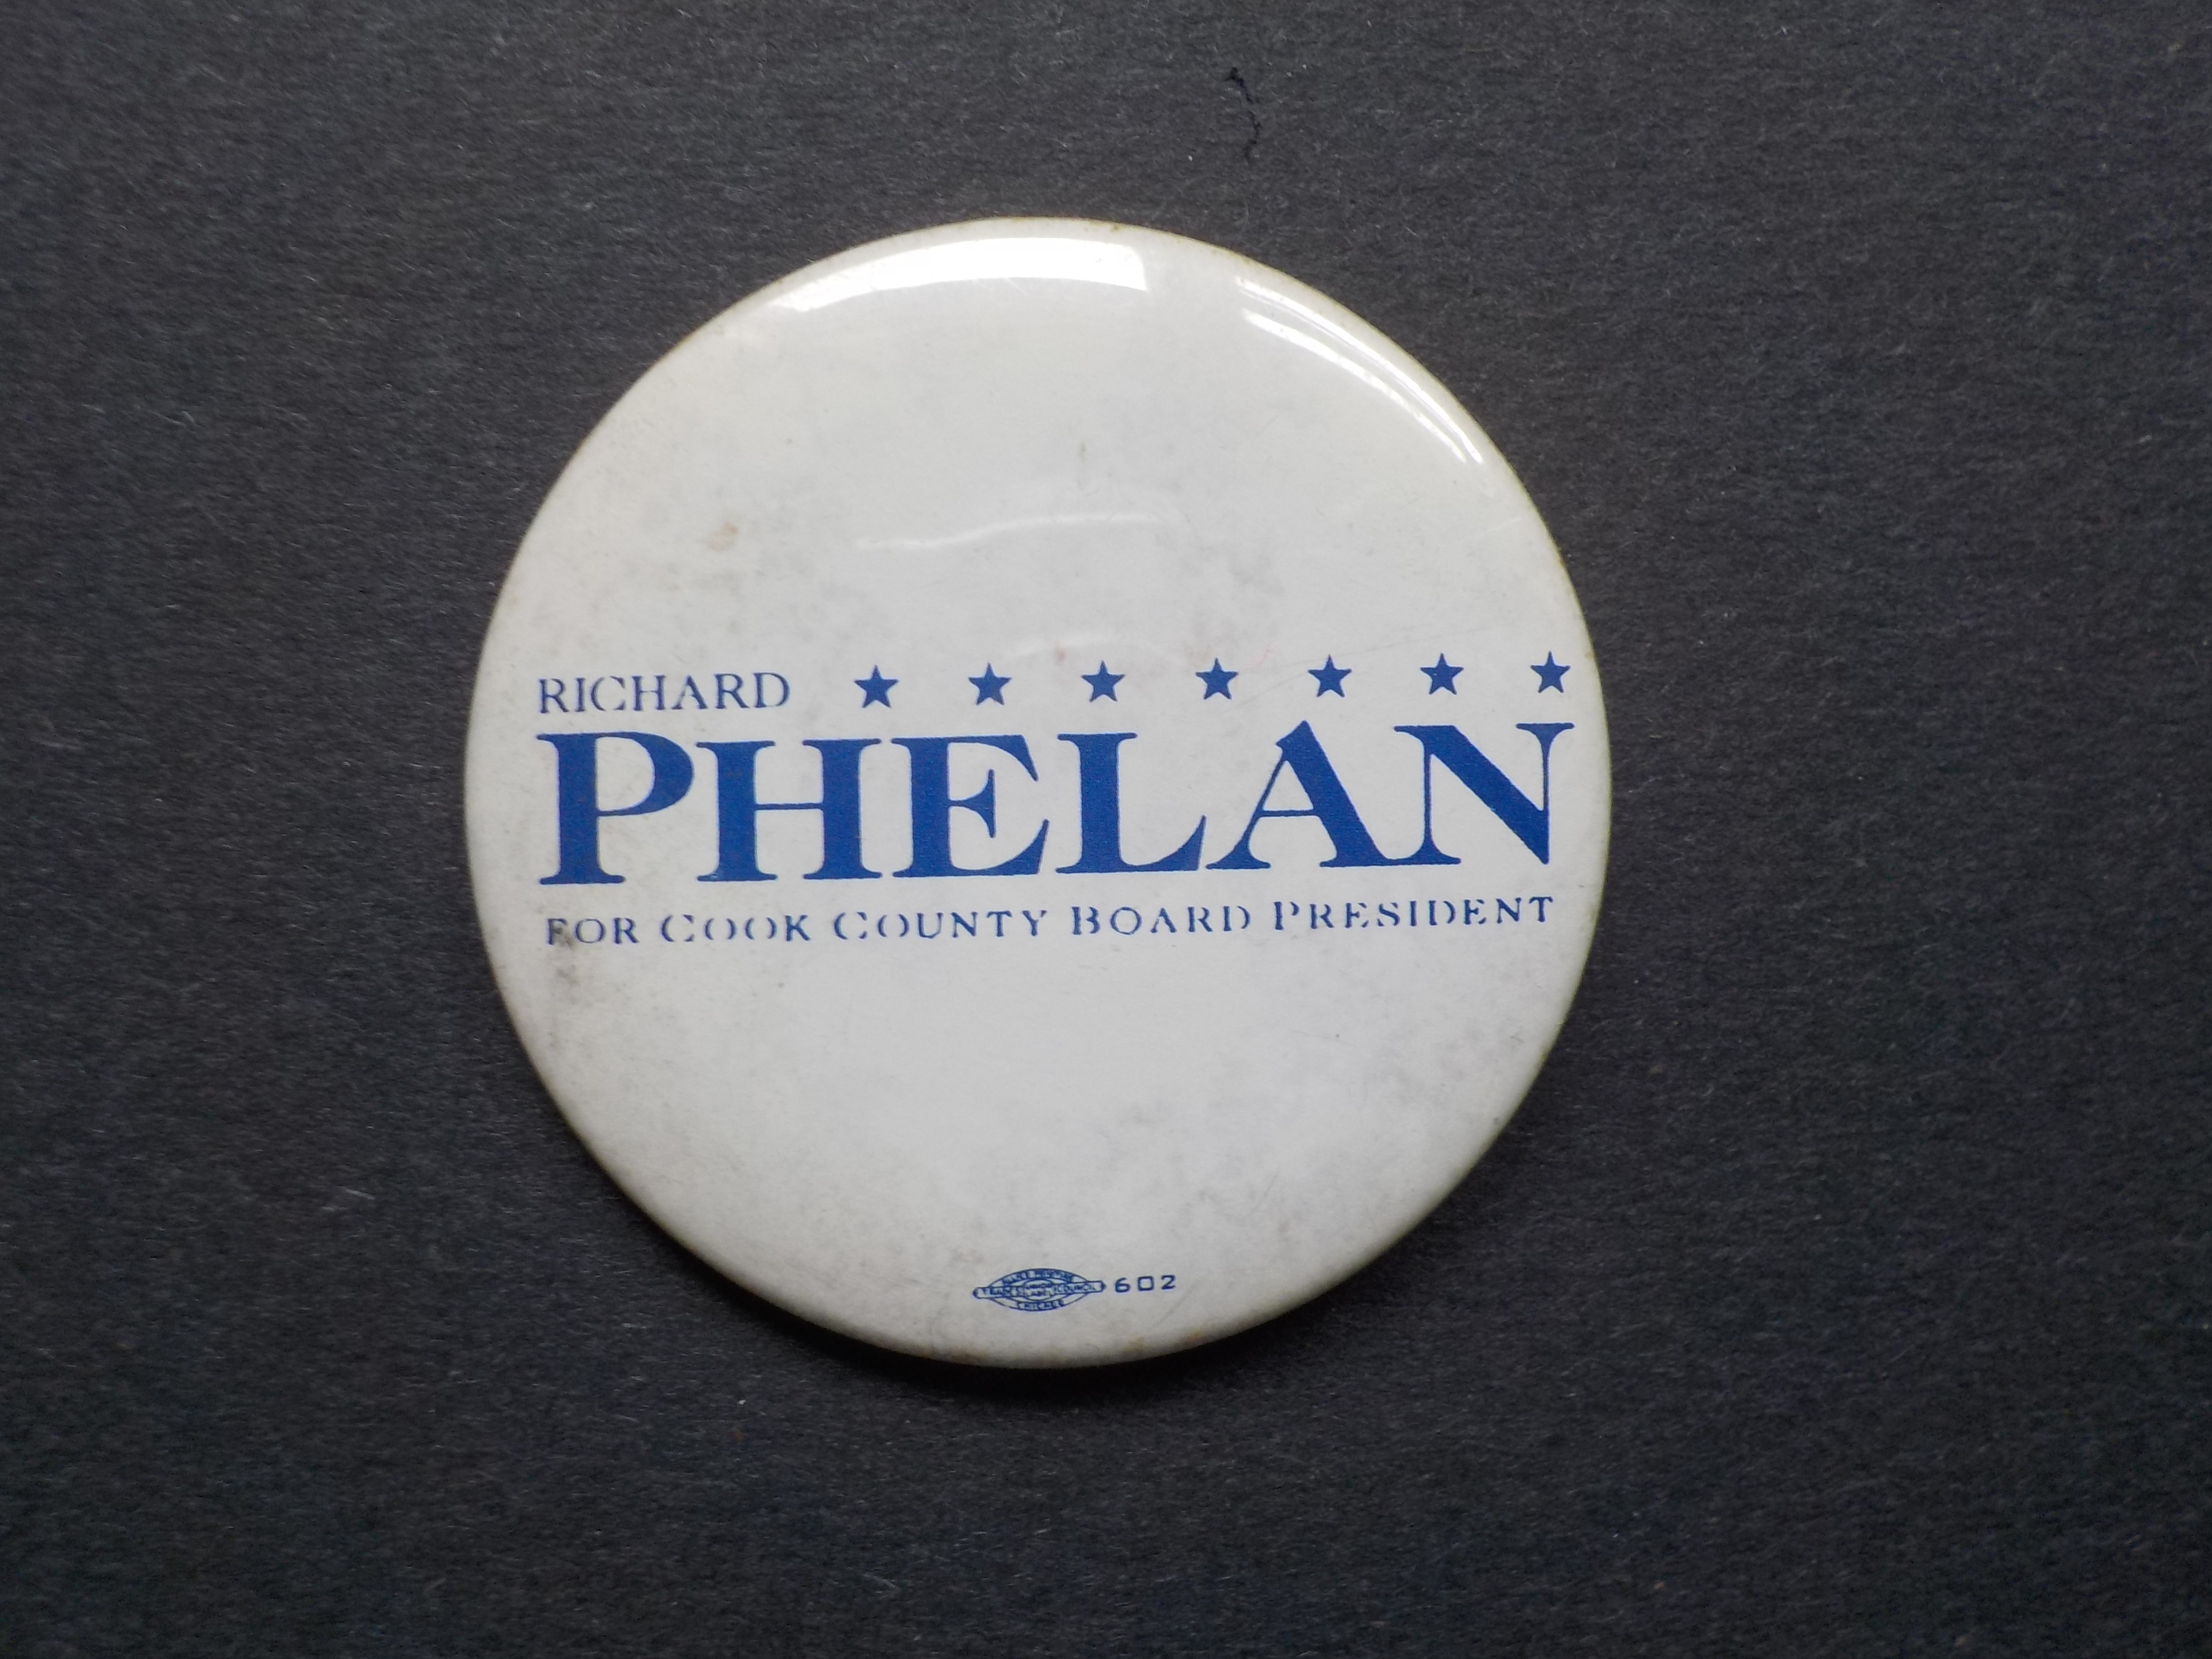 Richard Phelan